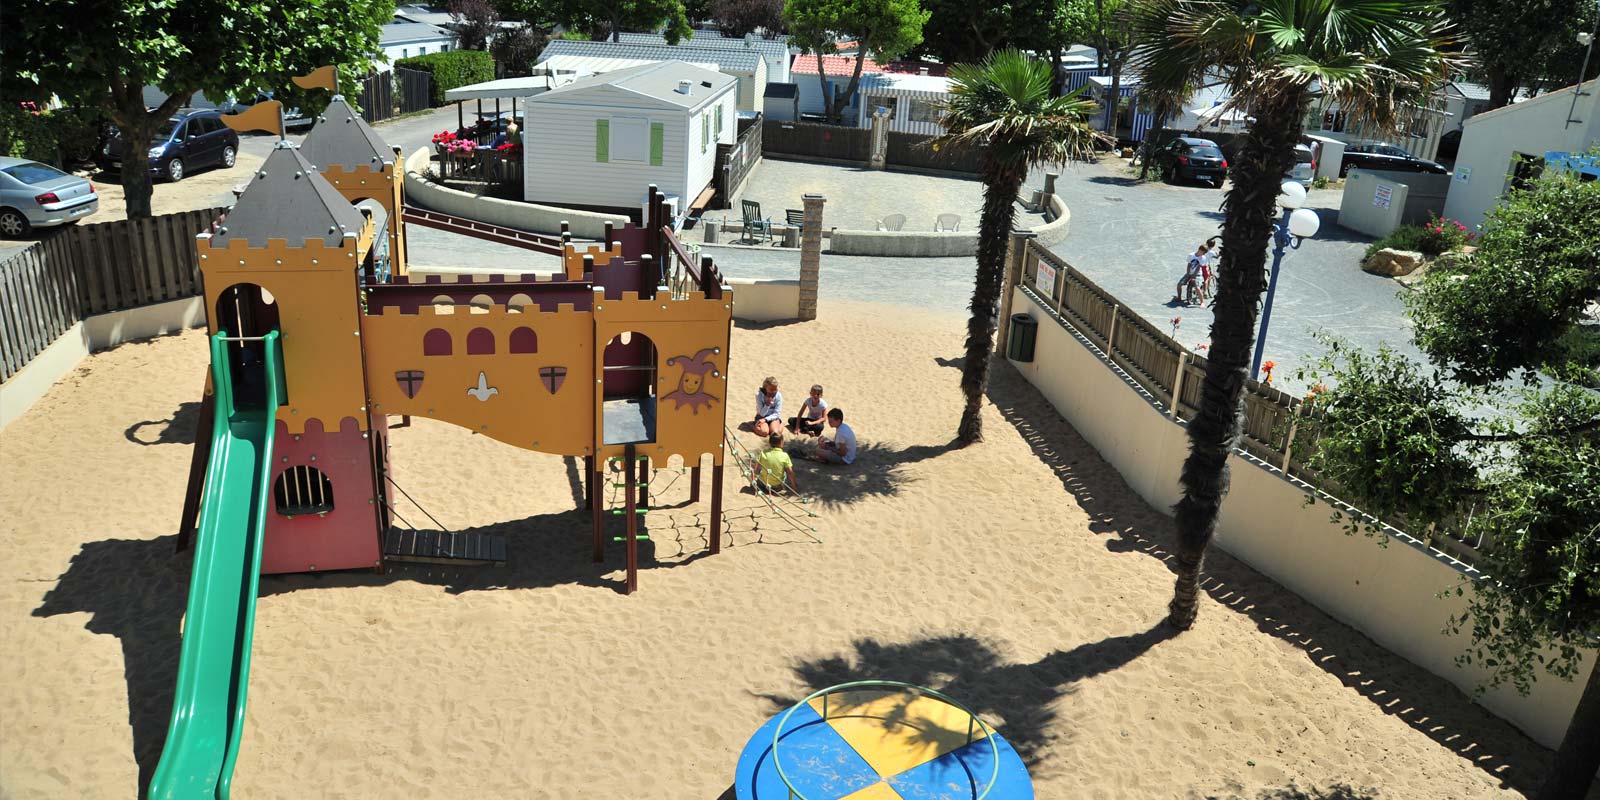 Luchtfoto van de speeltuin van de camping in Saint-Hilaire in de Vendée